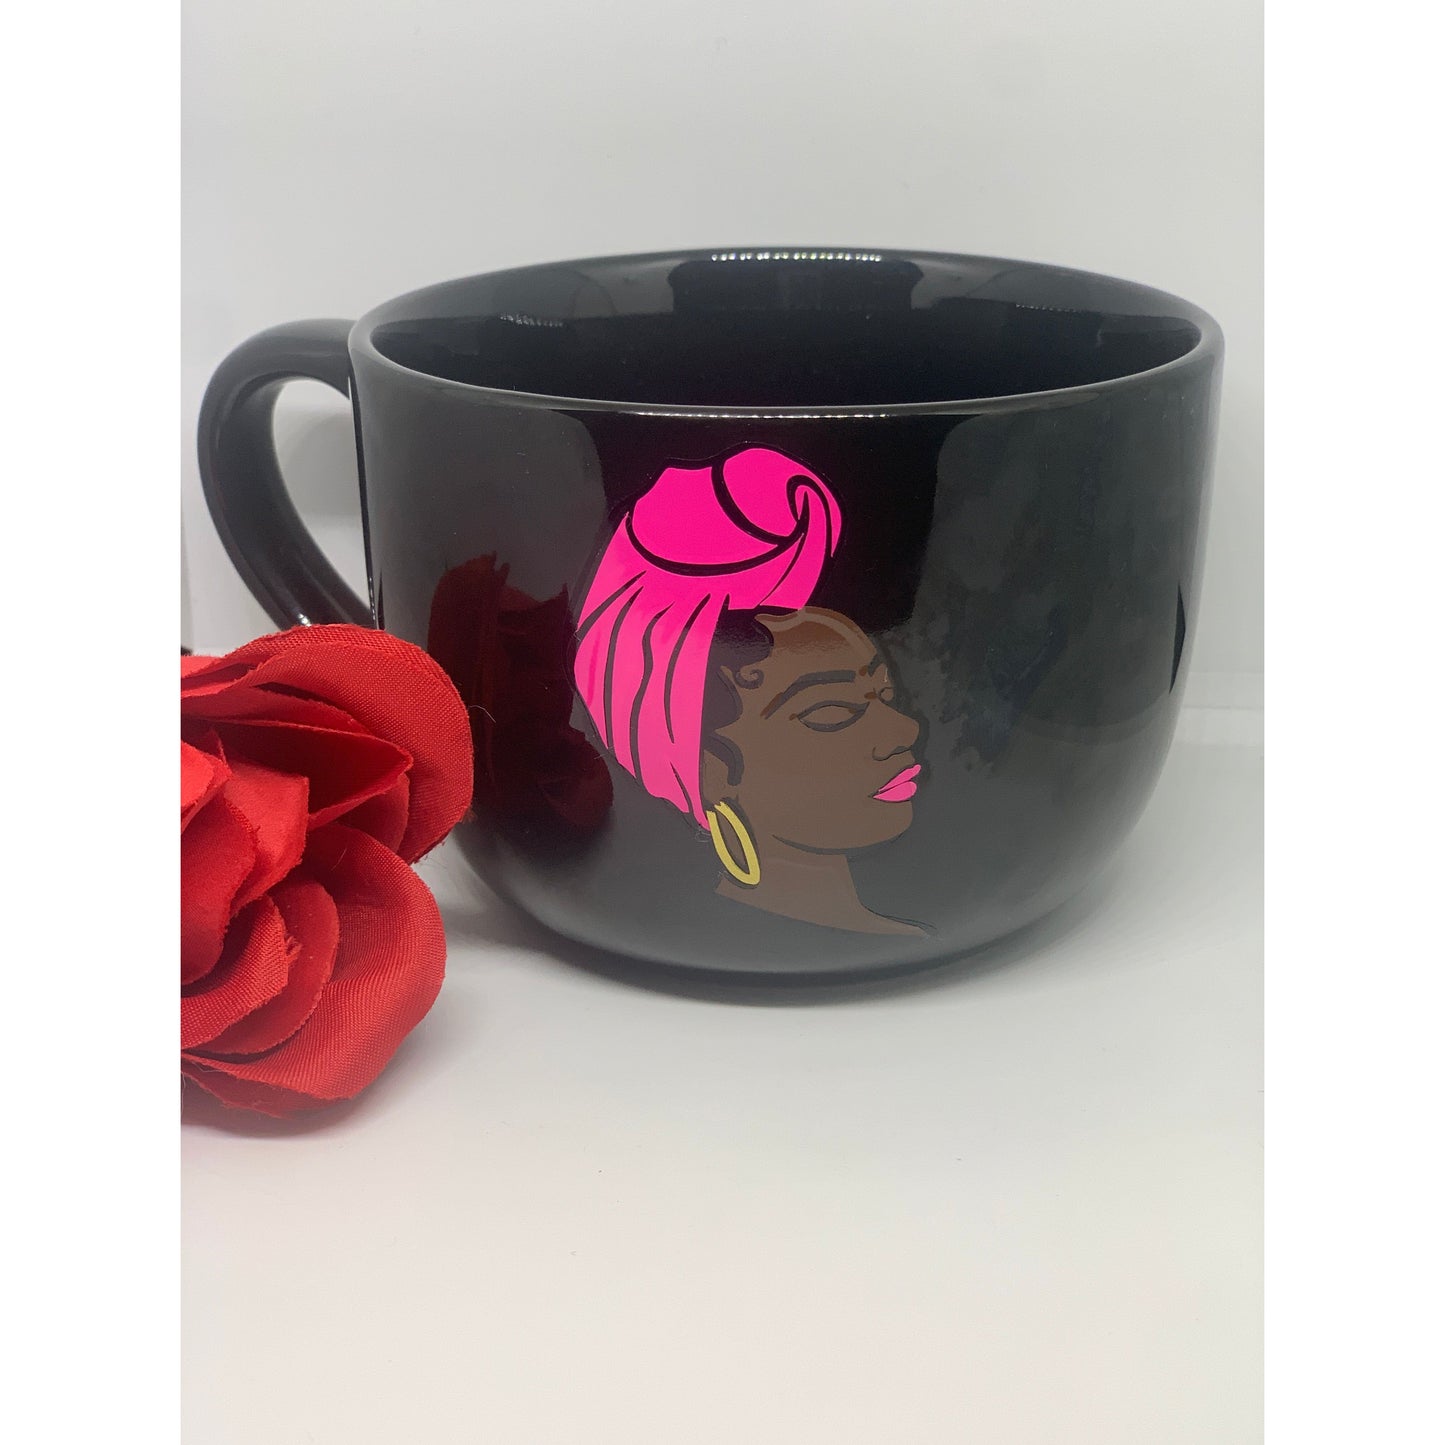 Black holo mug